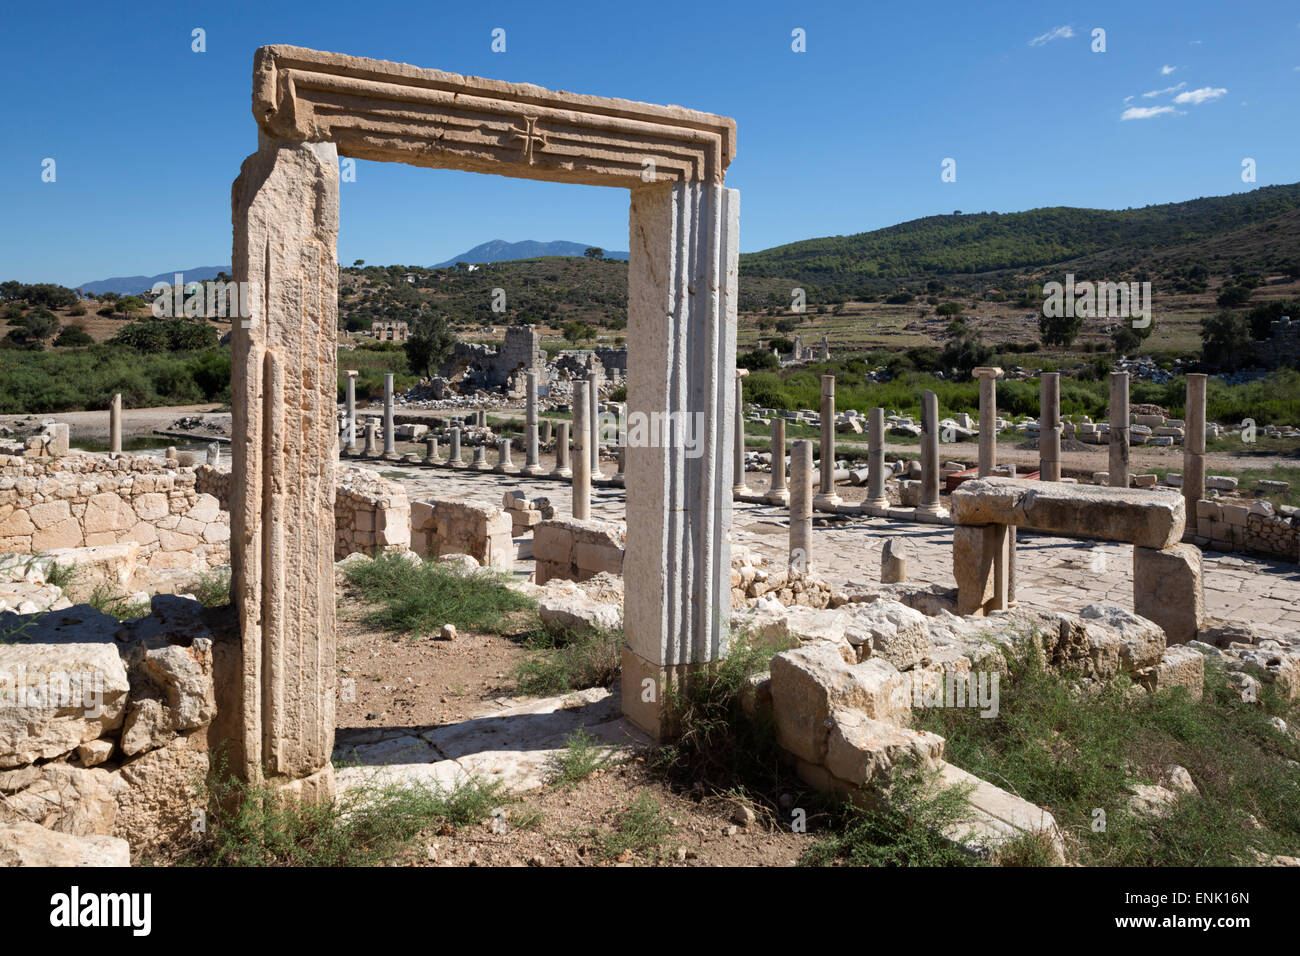 Ruined colonnaded Main Street, Patara, near Kalkan, Lycia, Antalya Province, Southwest Turkey, Anatolia, Turkey Stock Photo